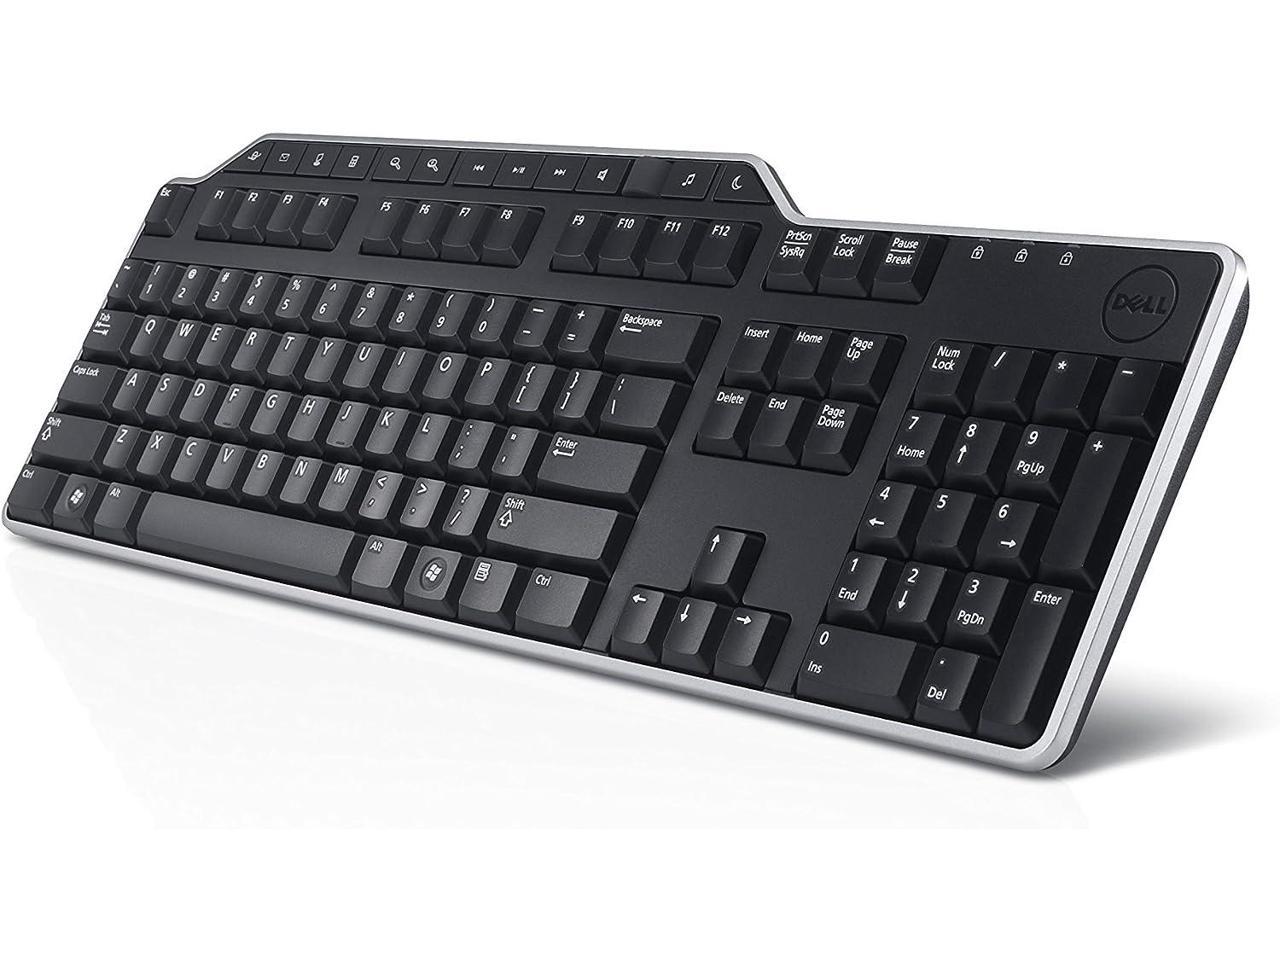 Dell Kb522 Business Multimedia Keyboard Keyboard 7834